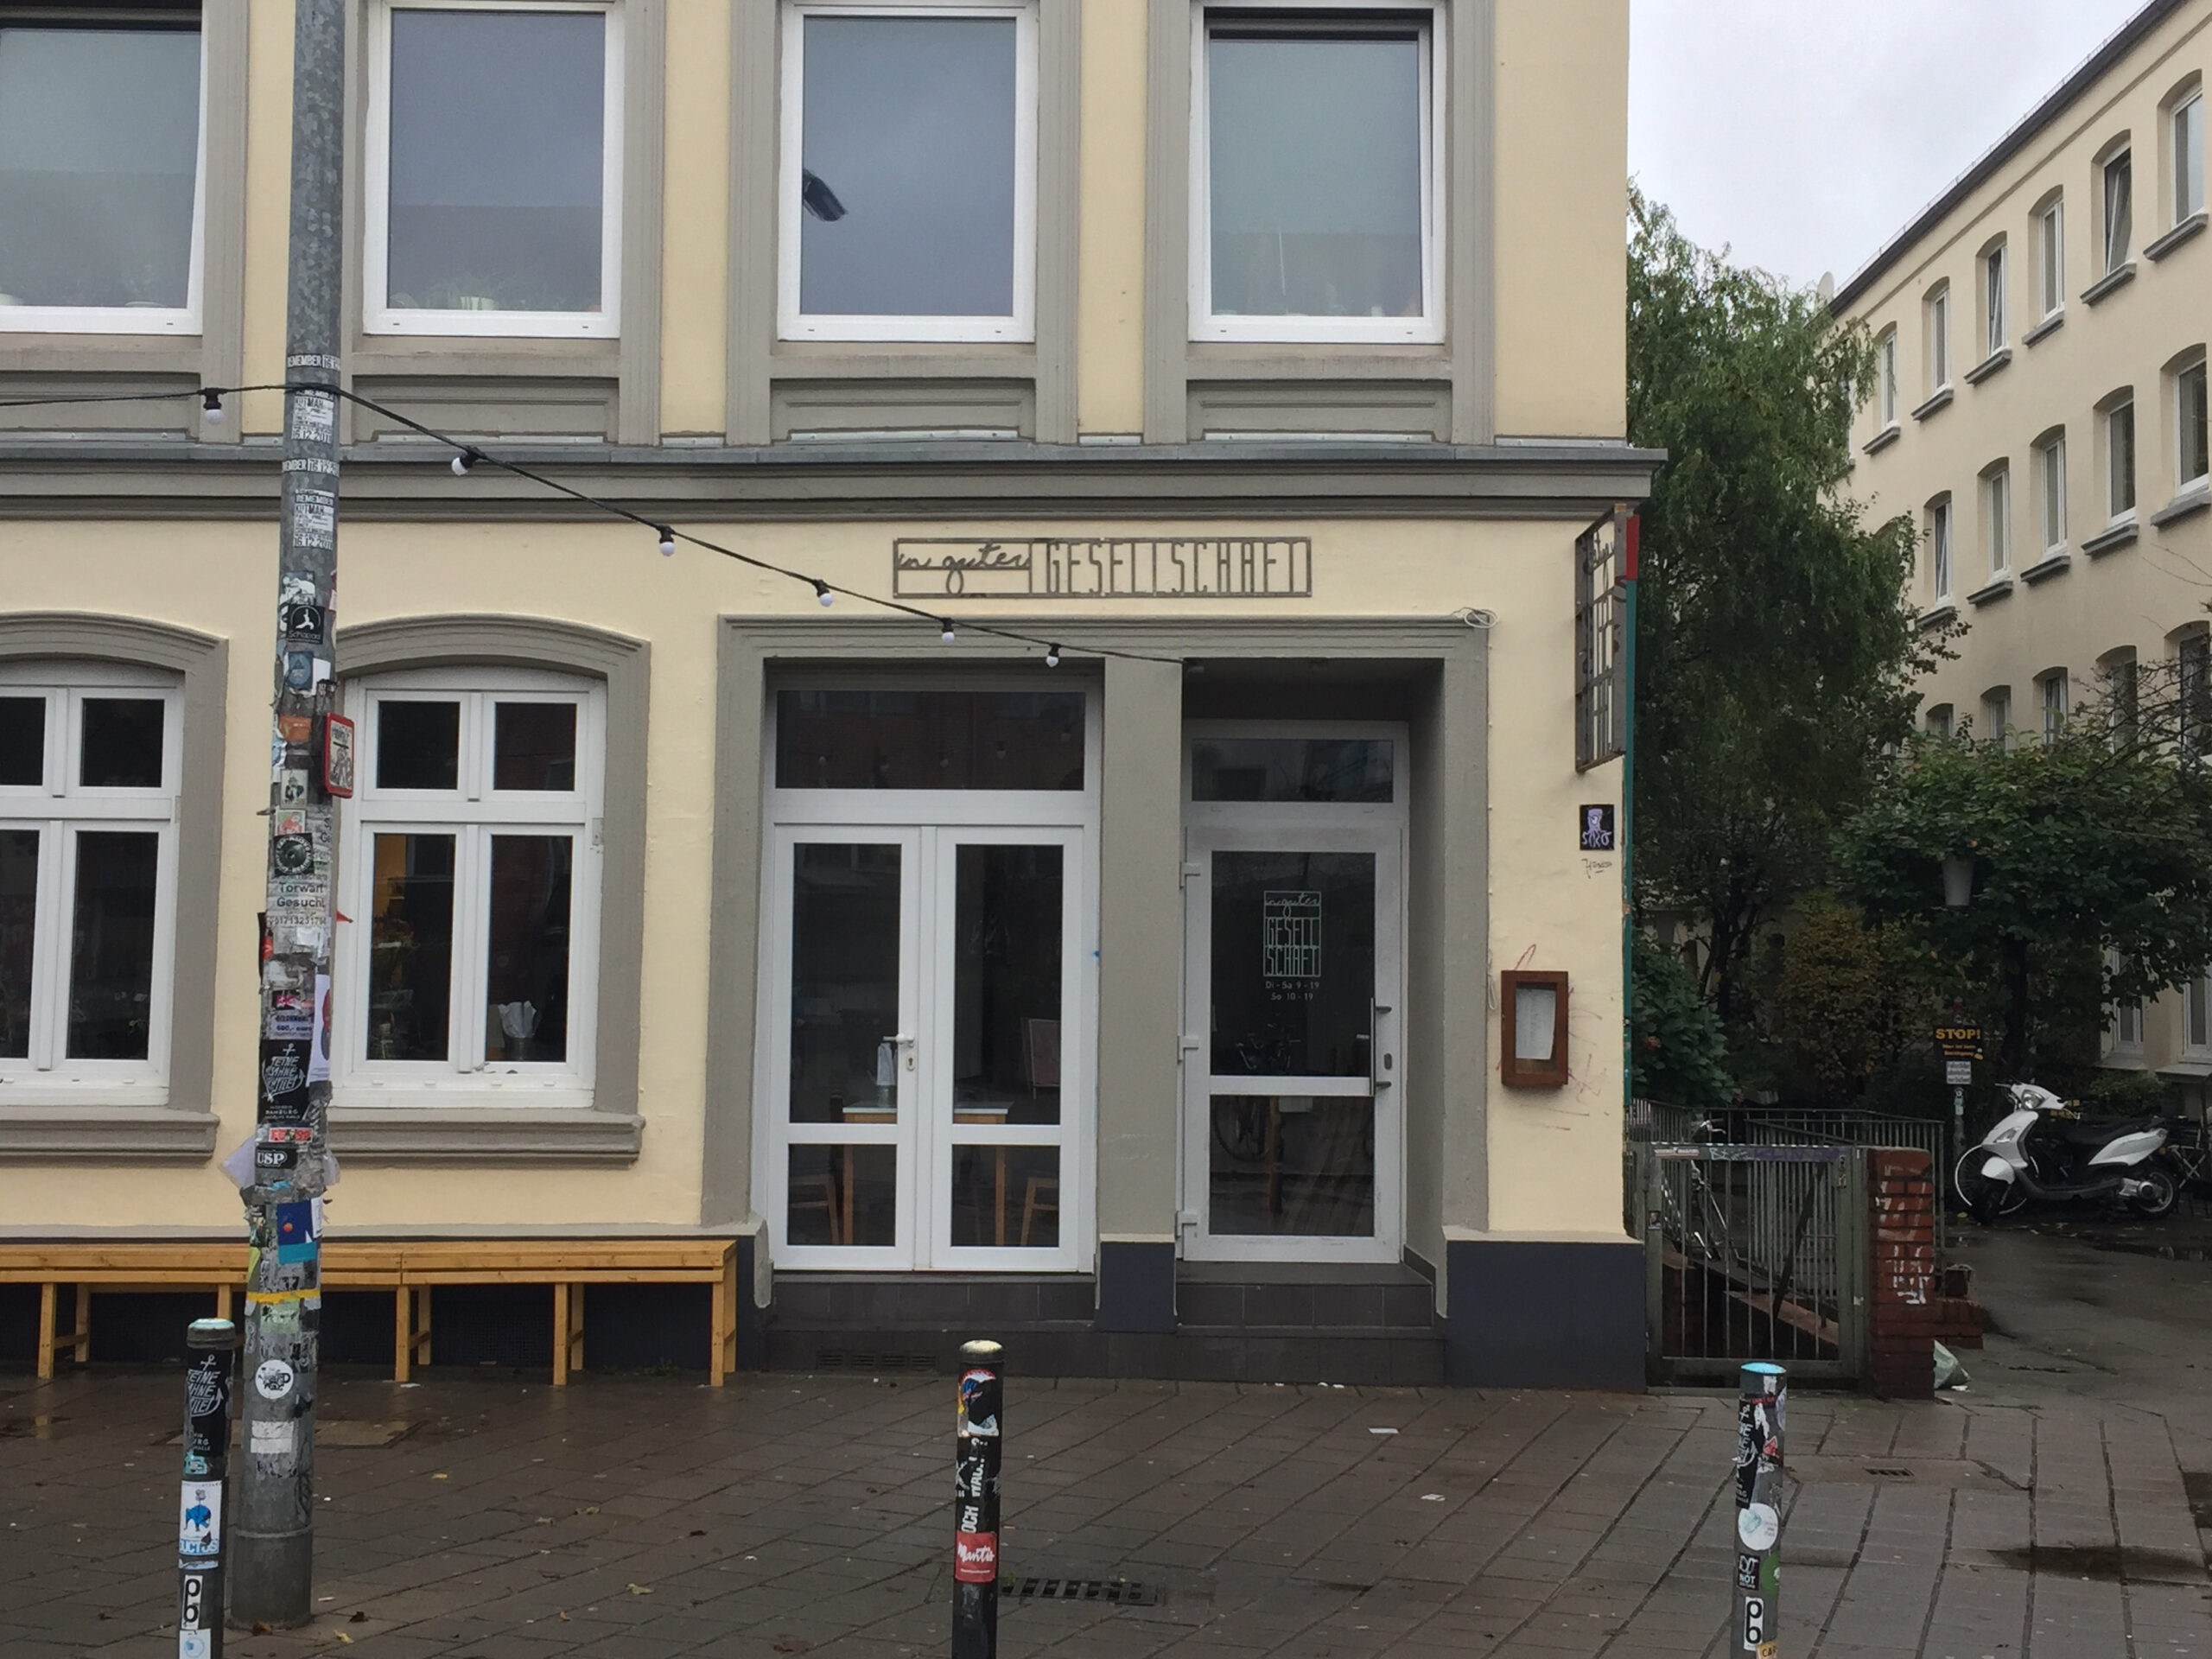 Dauerhaft geschlossen: das Zero-Waste-Café „In guter Gesellschaft“ in der Schanze